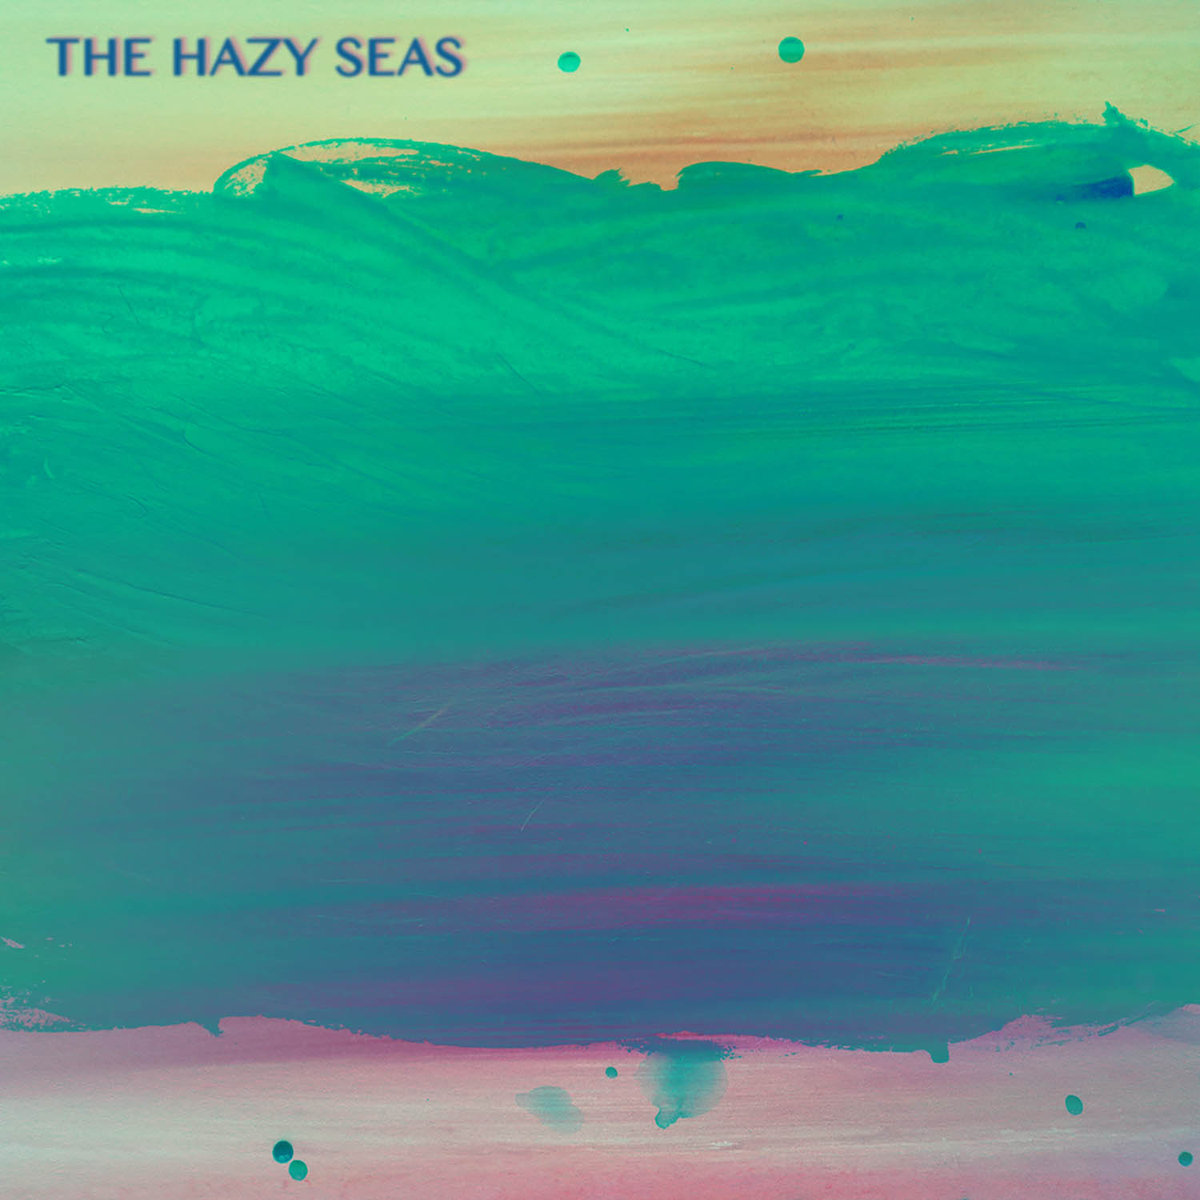 The Hazy Seas – “Kite Dodging”